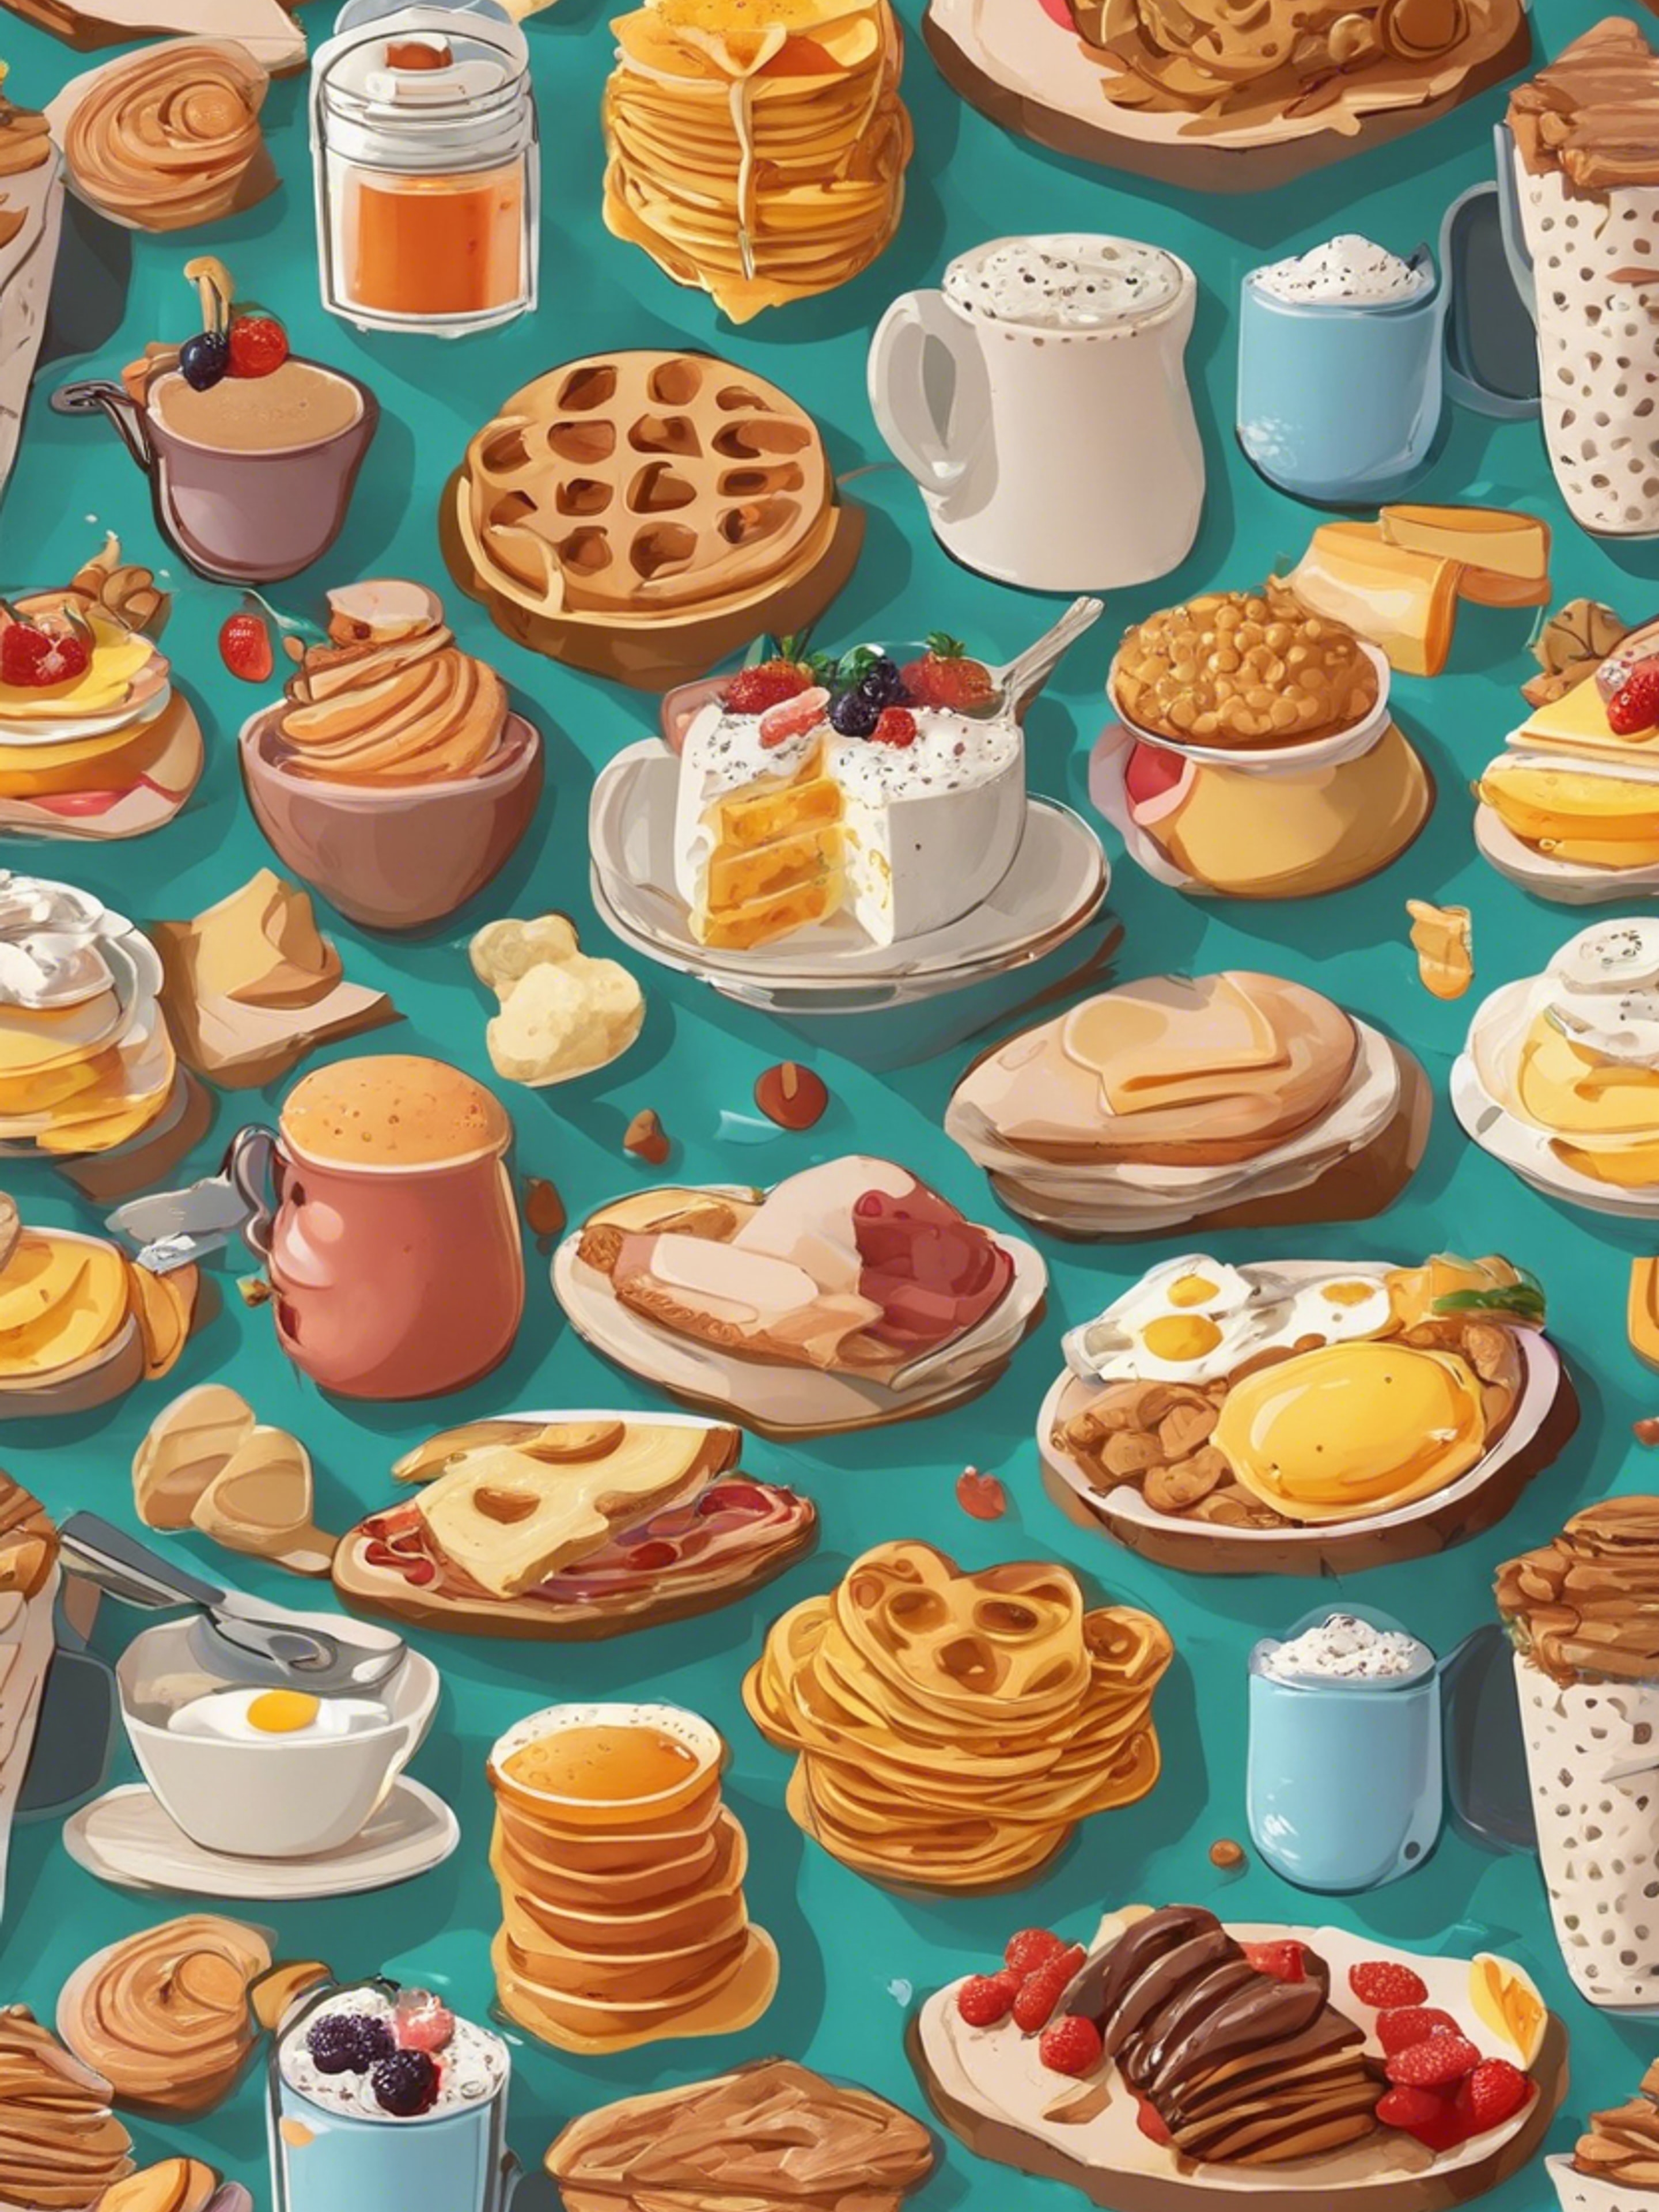 Cartoonish breakfast food items in an appealing, kid-friendly pattern. Tapeta[fa493d8b255444e69f8d]